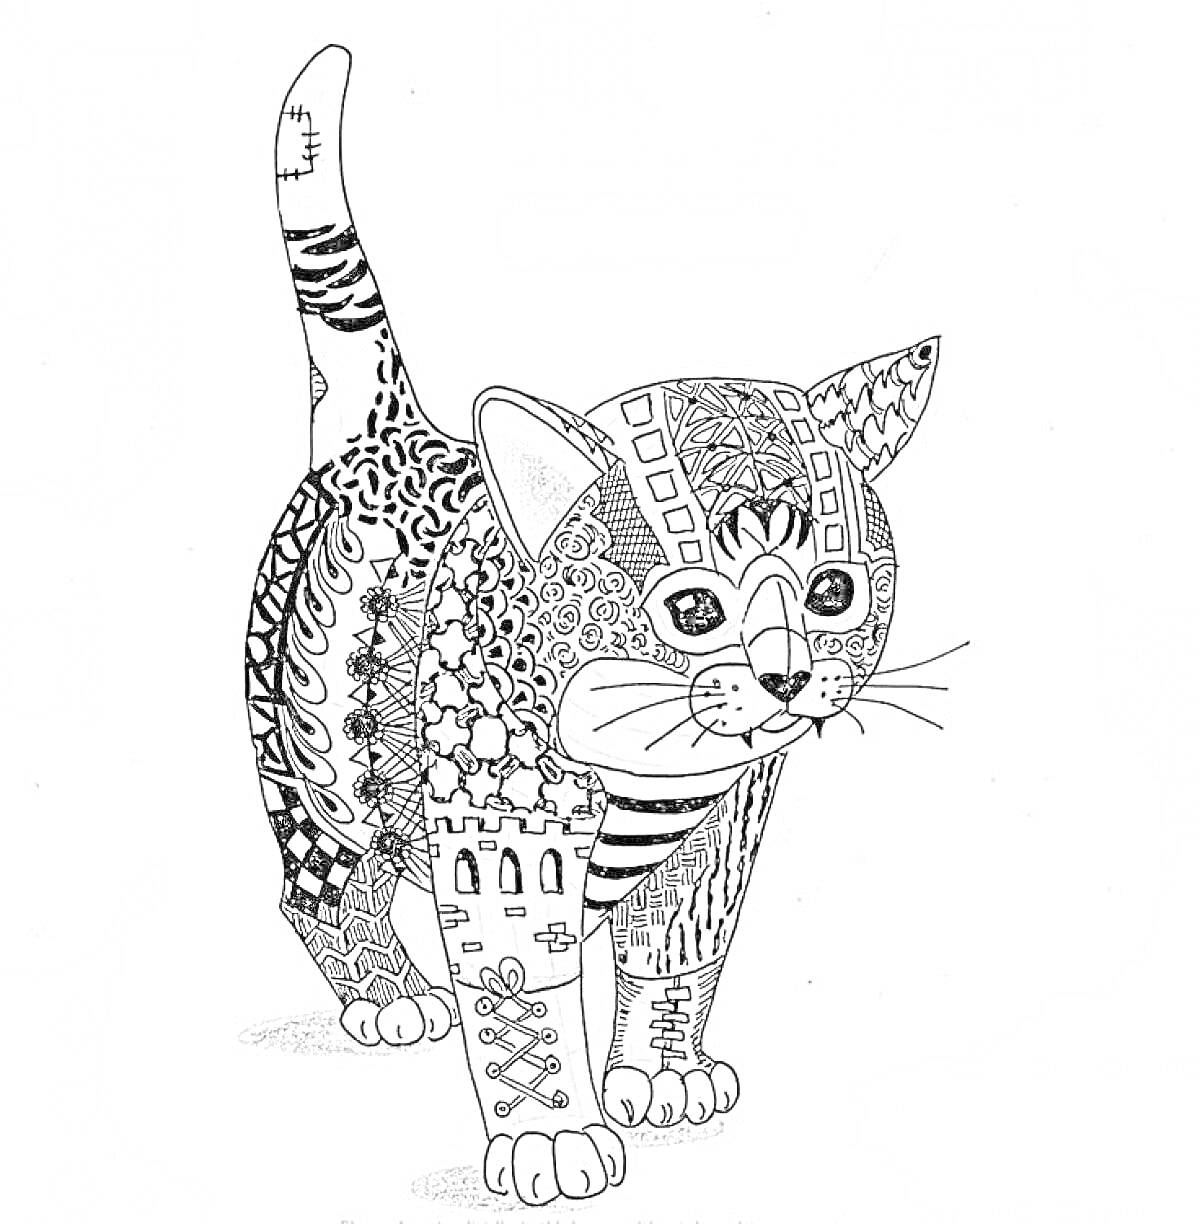 Раскраска Антистресс раскраска с котёнком, украшенным орнаментами и узорами: геометрическими фигурами, абстрактными элементами, полосами и точками